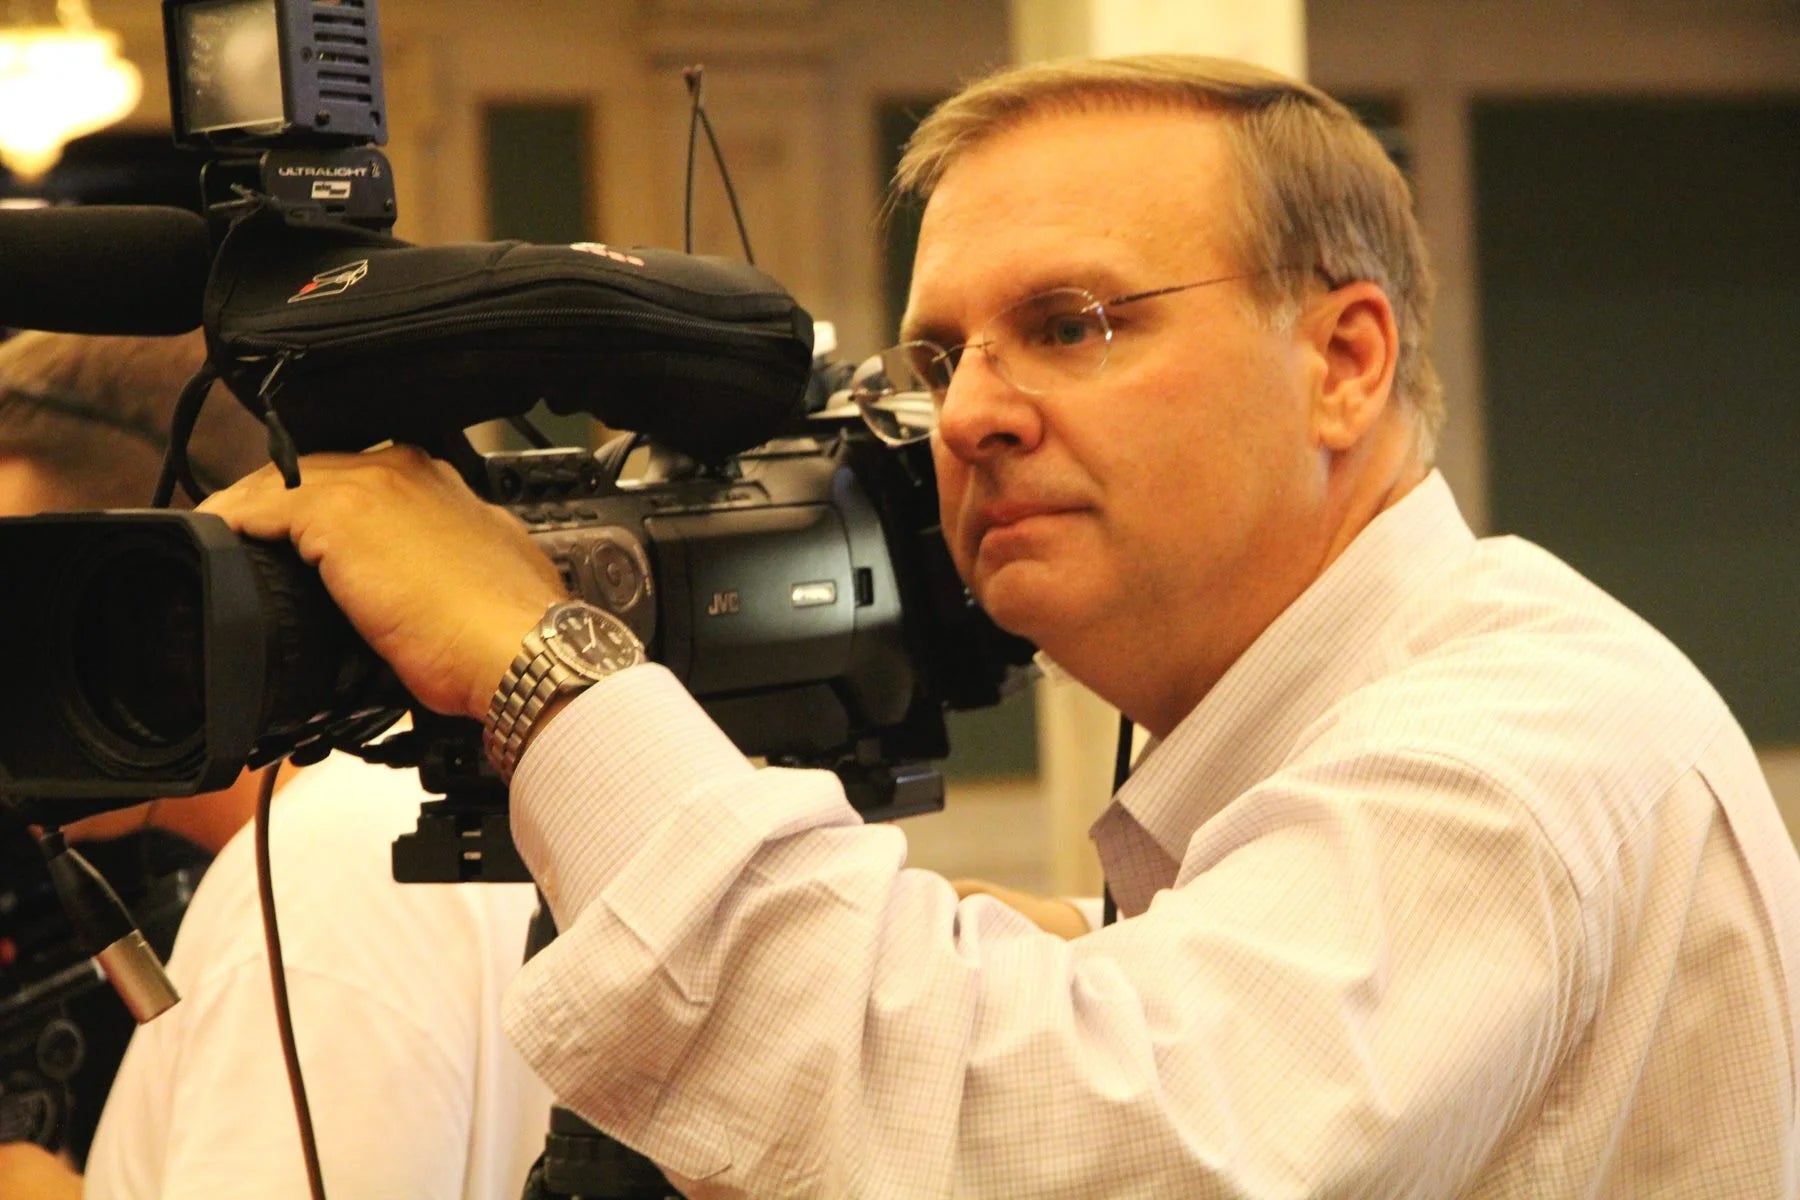 Tom MacDonald operates a camera